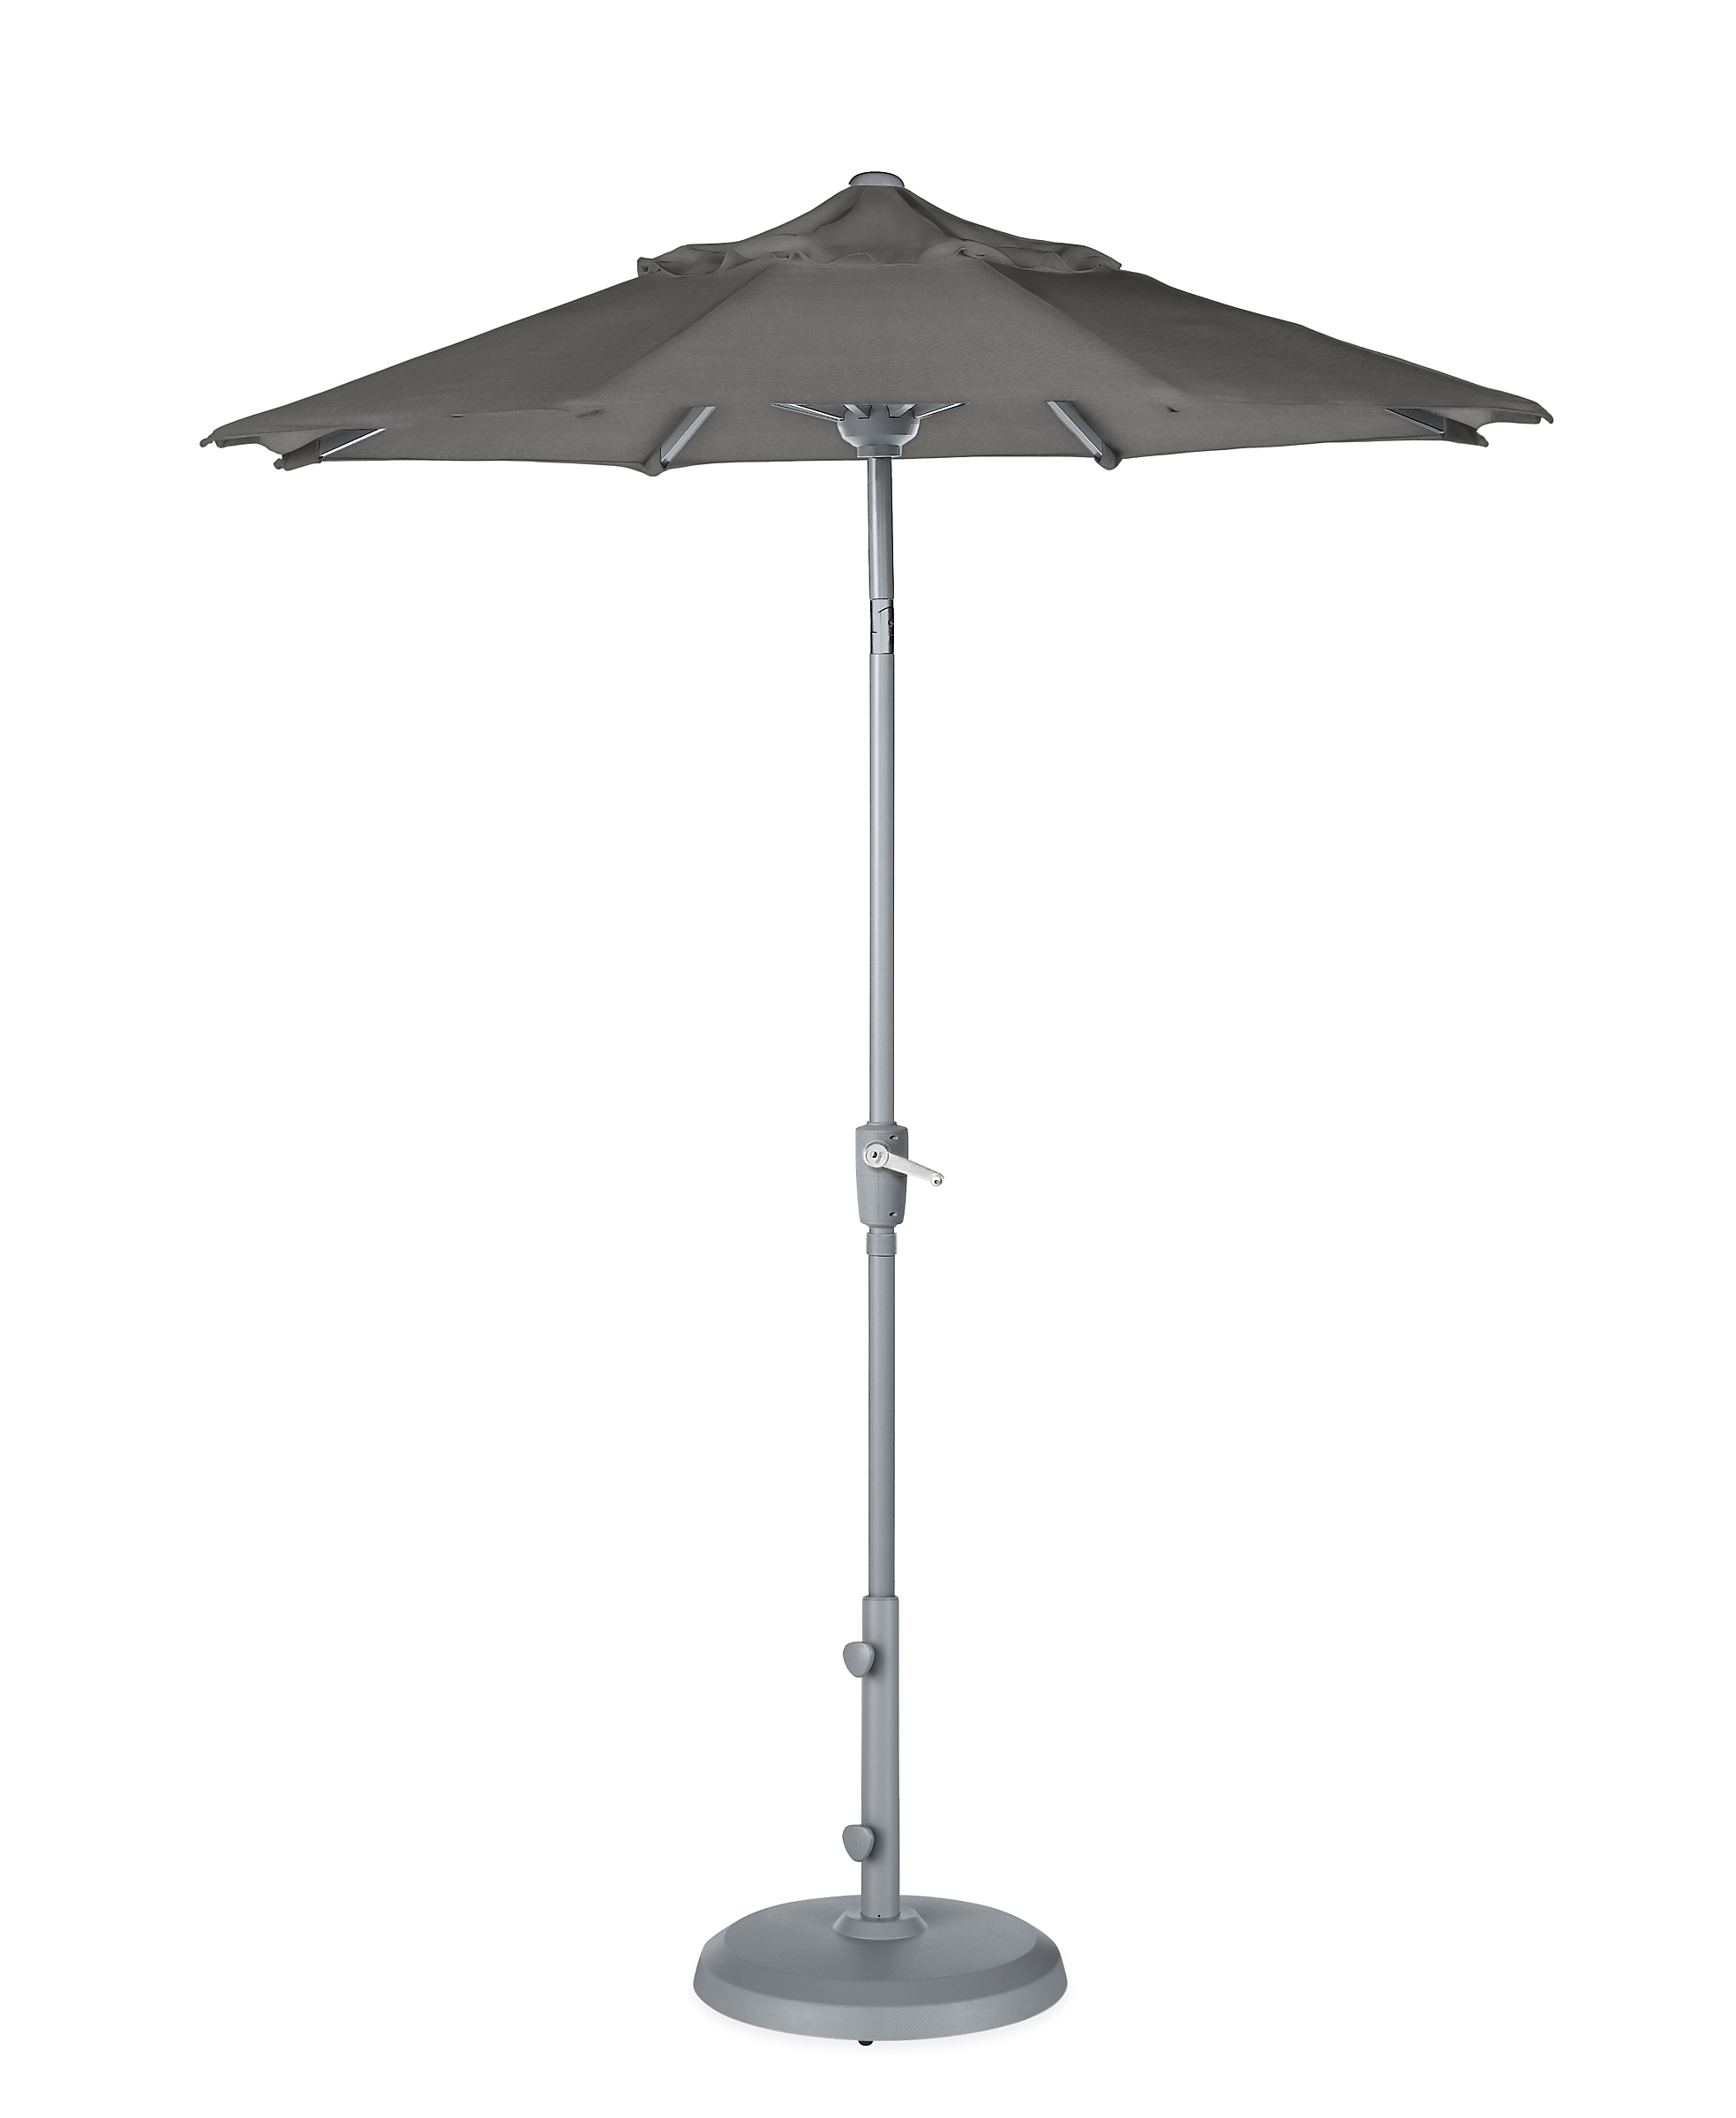 Maui 7.5' Round Patio Umbrella in Sunbrella Canvas Slate with Silver Base